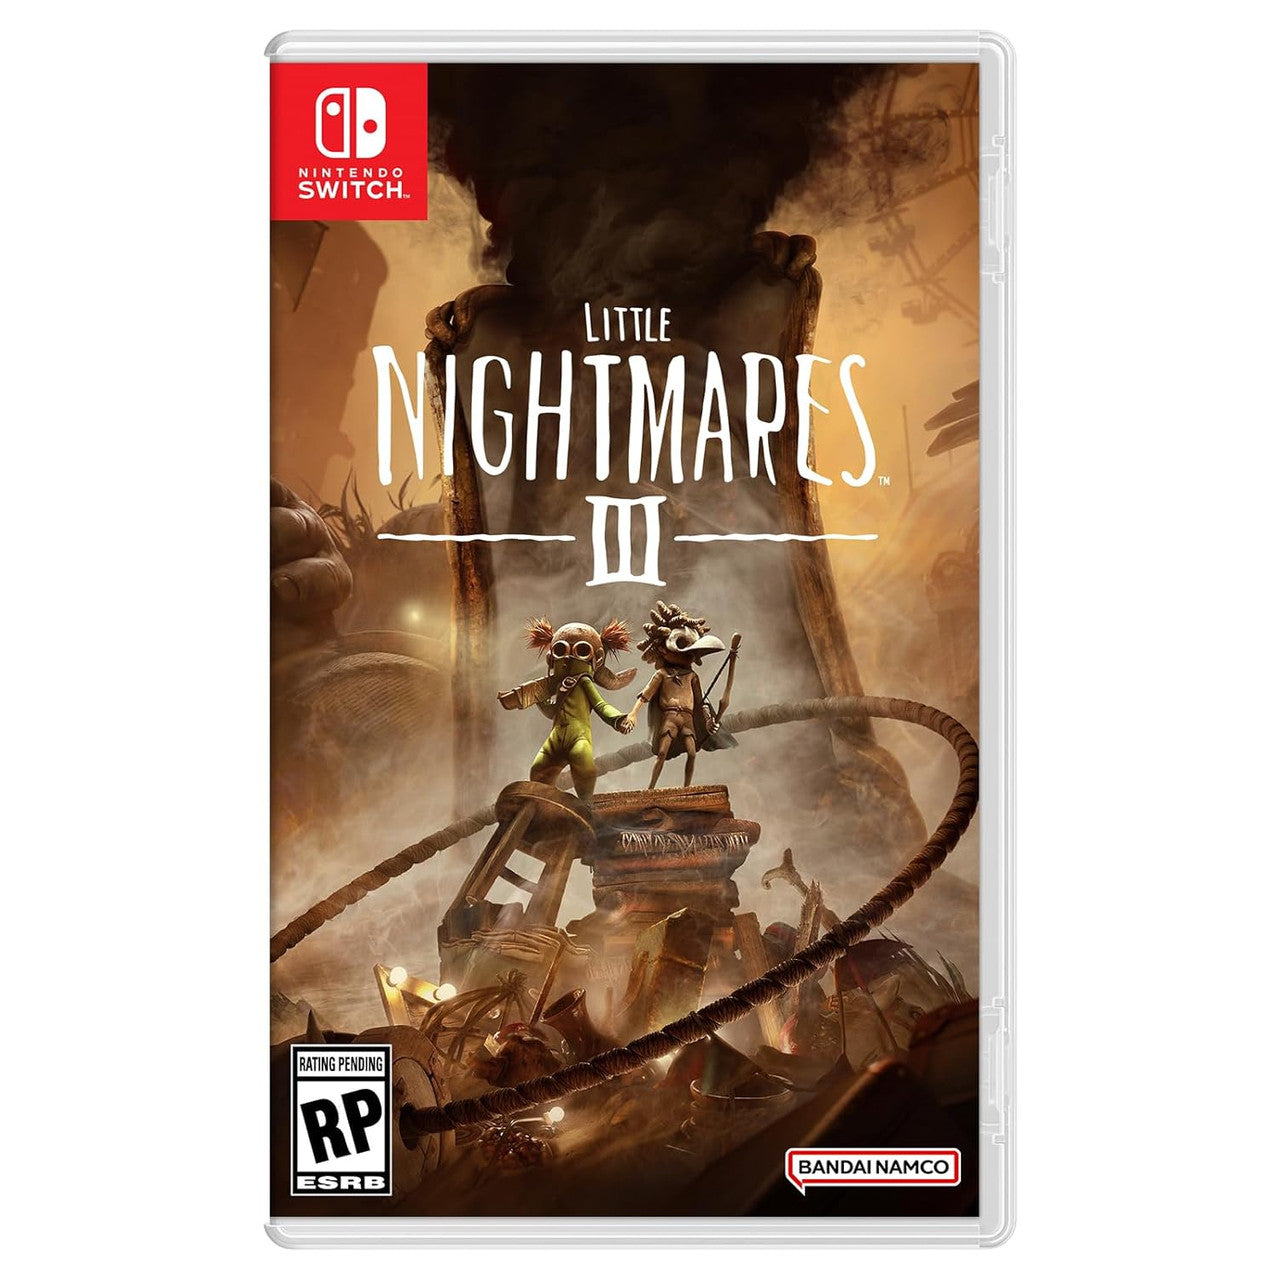 Little Nightmares II. Nintendo Switch